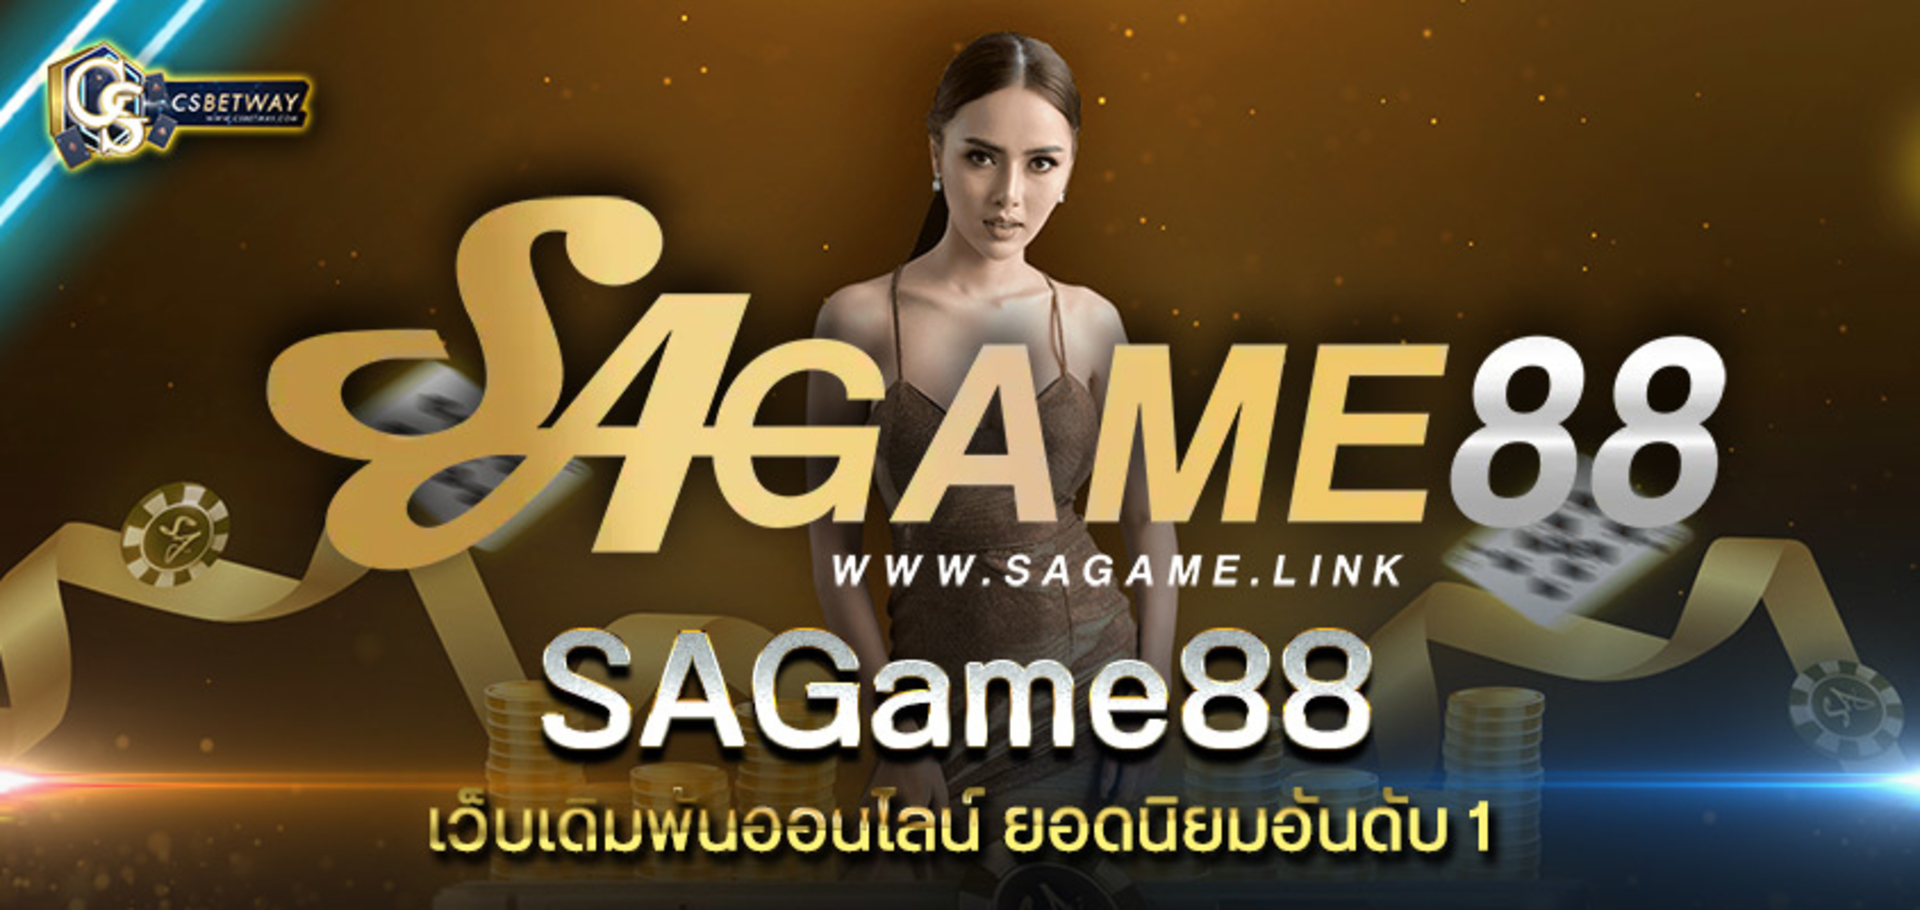 Sagame88 เว็บเดิมพันออนไลน์ ยอดนิยมอันดับ 1 แทงบาคาร่า รูเล็ต สล็อตไฮโล ฝากถอนอัตโนมัติ สมัคร Sagame88 ขั้นต่ำ 100 บาท รับโบนัสสูงสุด 1500 บาท